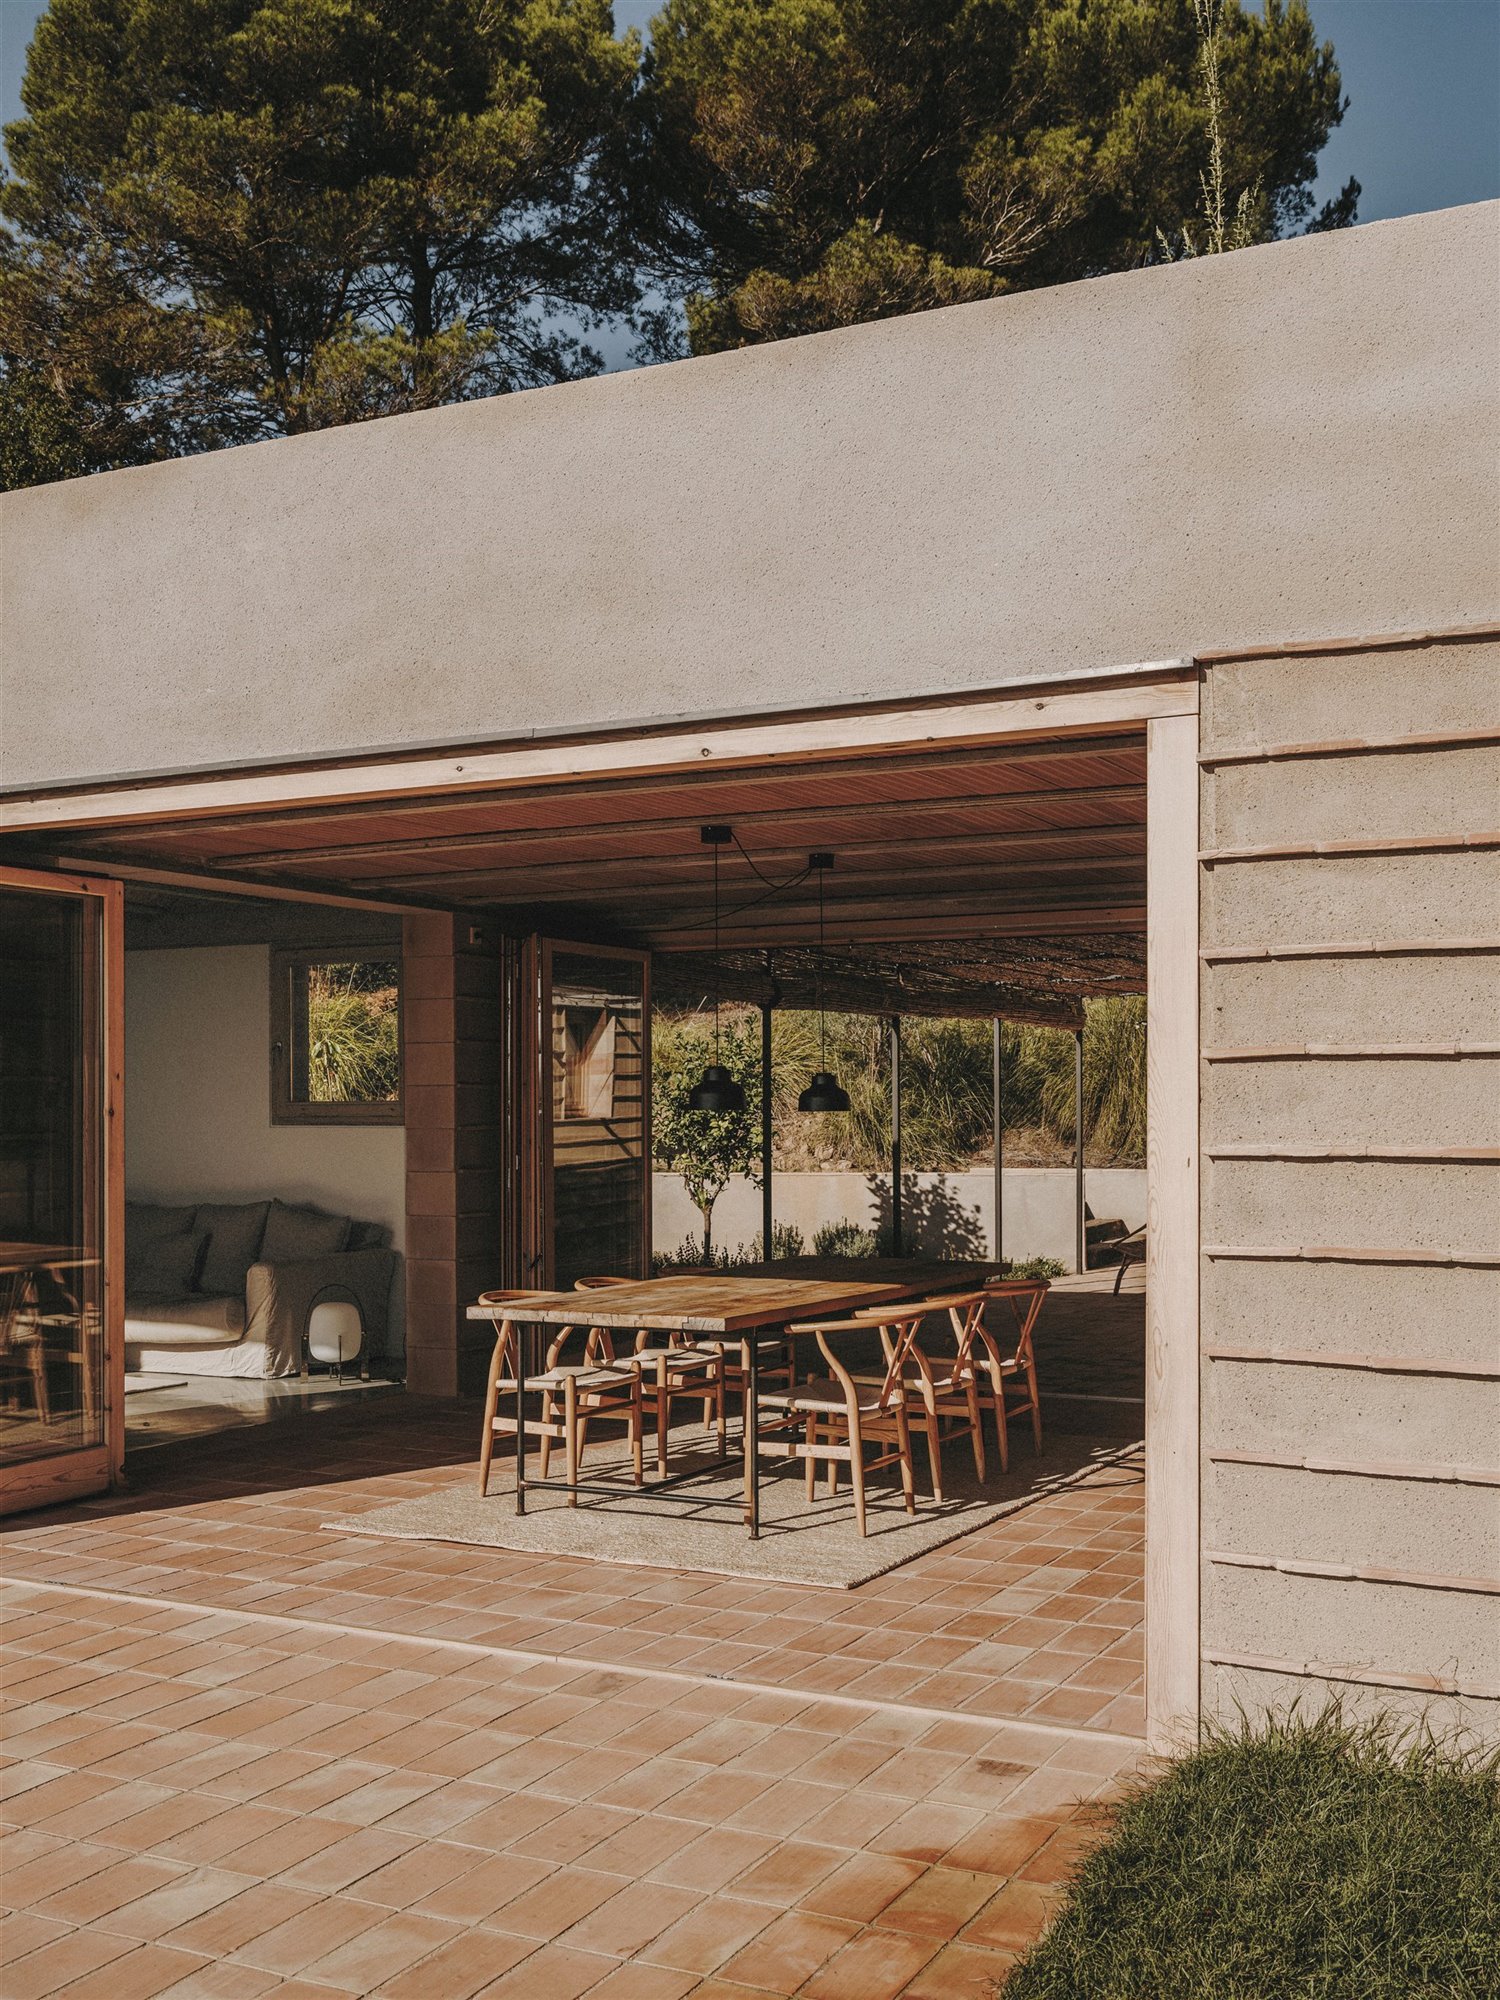 Casa moderna en el campo del estudio de arquitectura Mesura porche con comedor exterior suelo de ladrillo